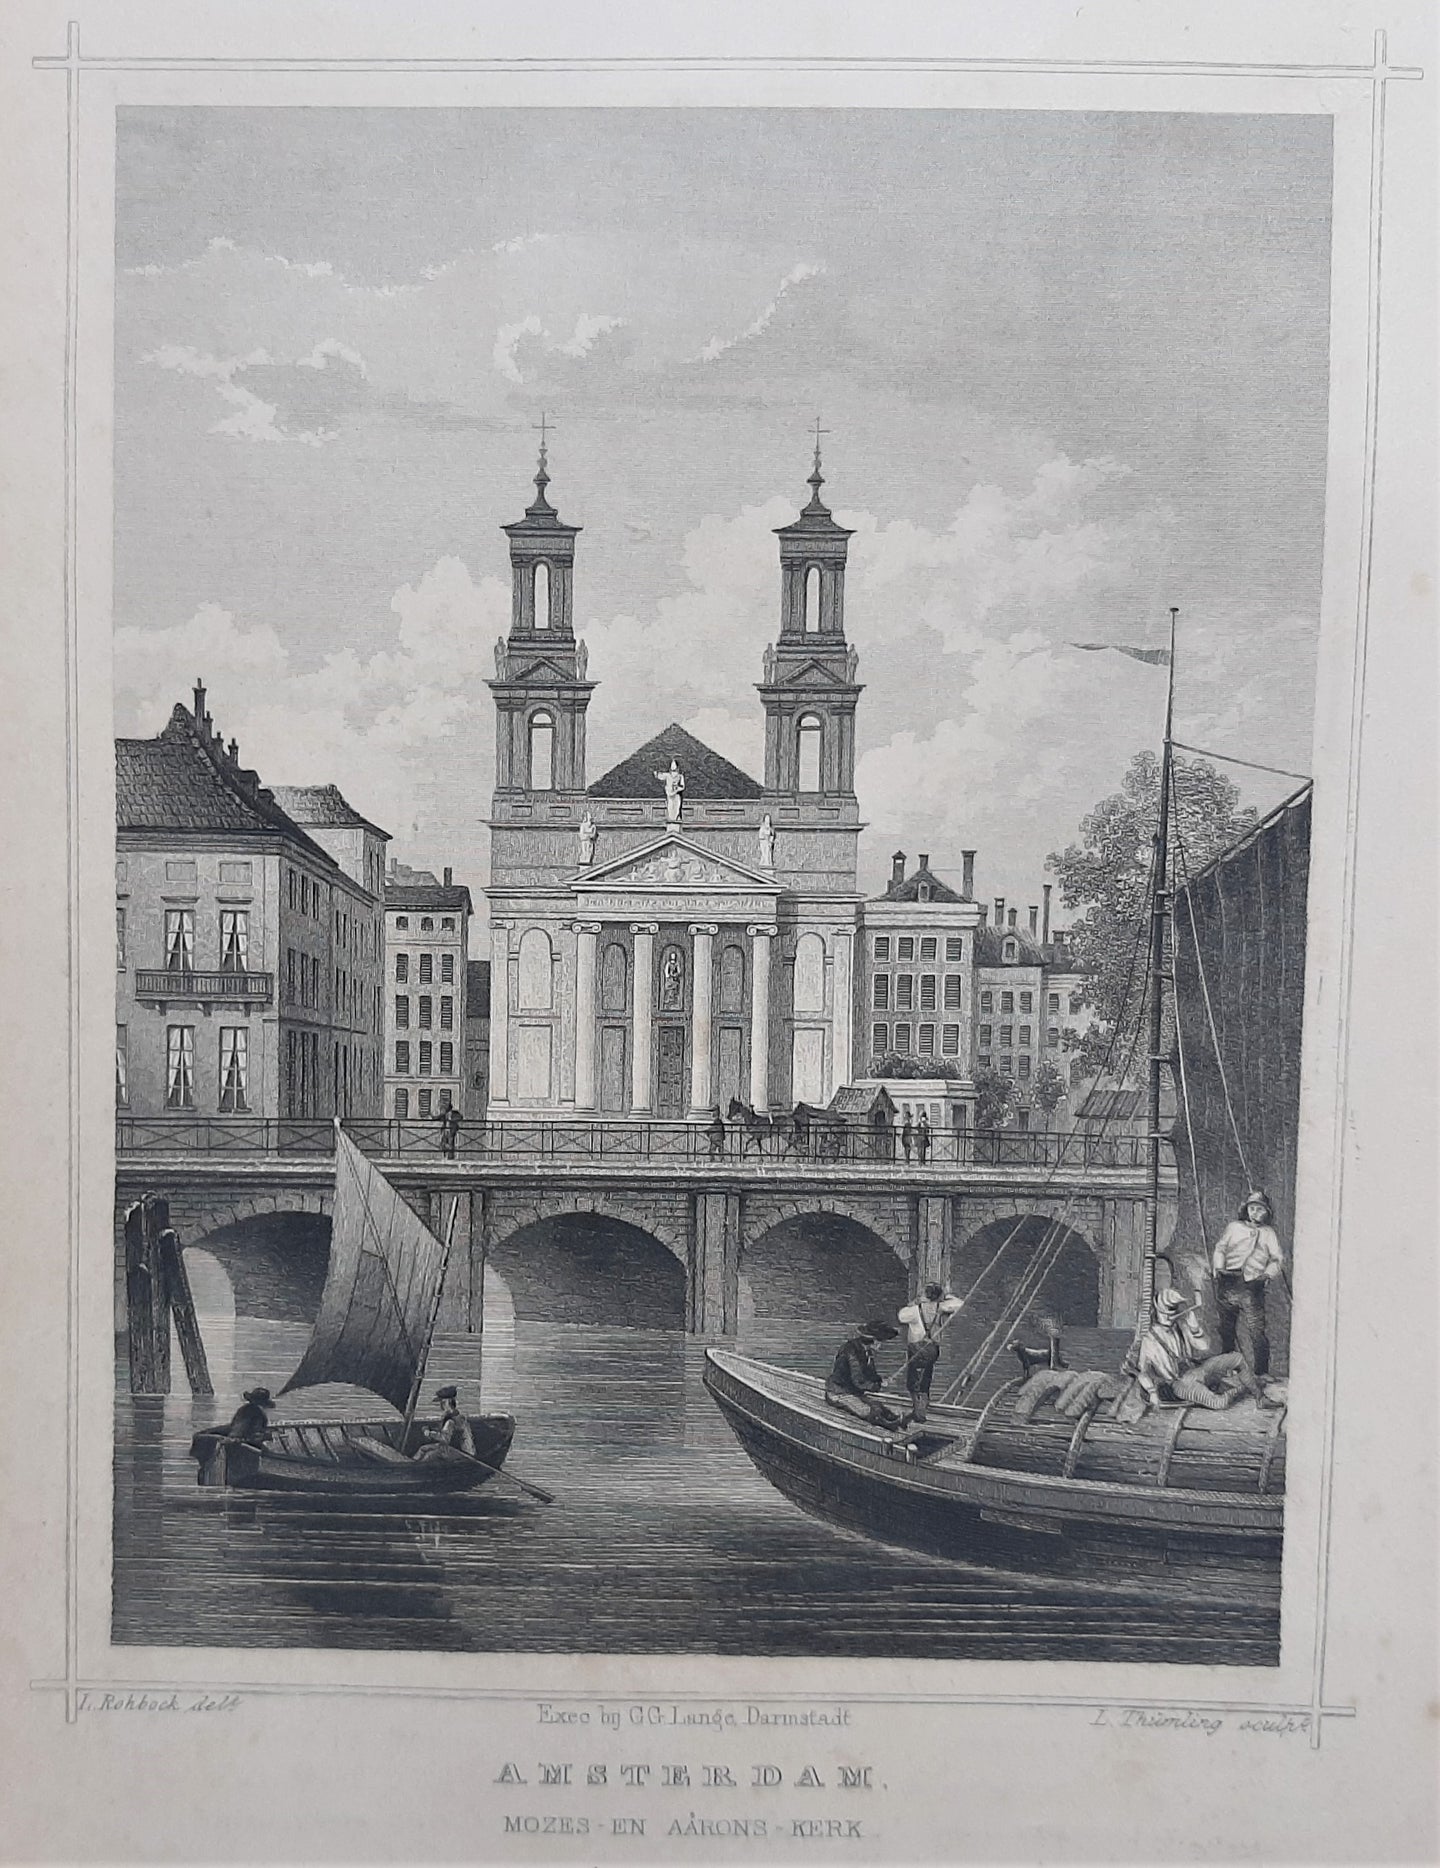 AMSTERDAM Waterlooplein Mozes- en Aäronkerk - JL Terwen / GB van Goor - 1858